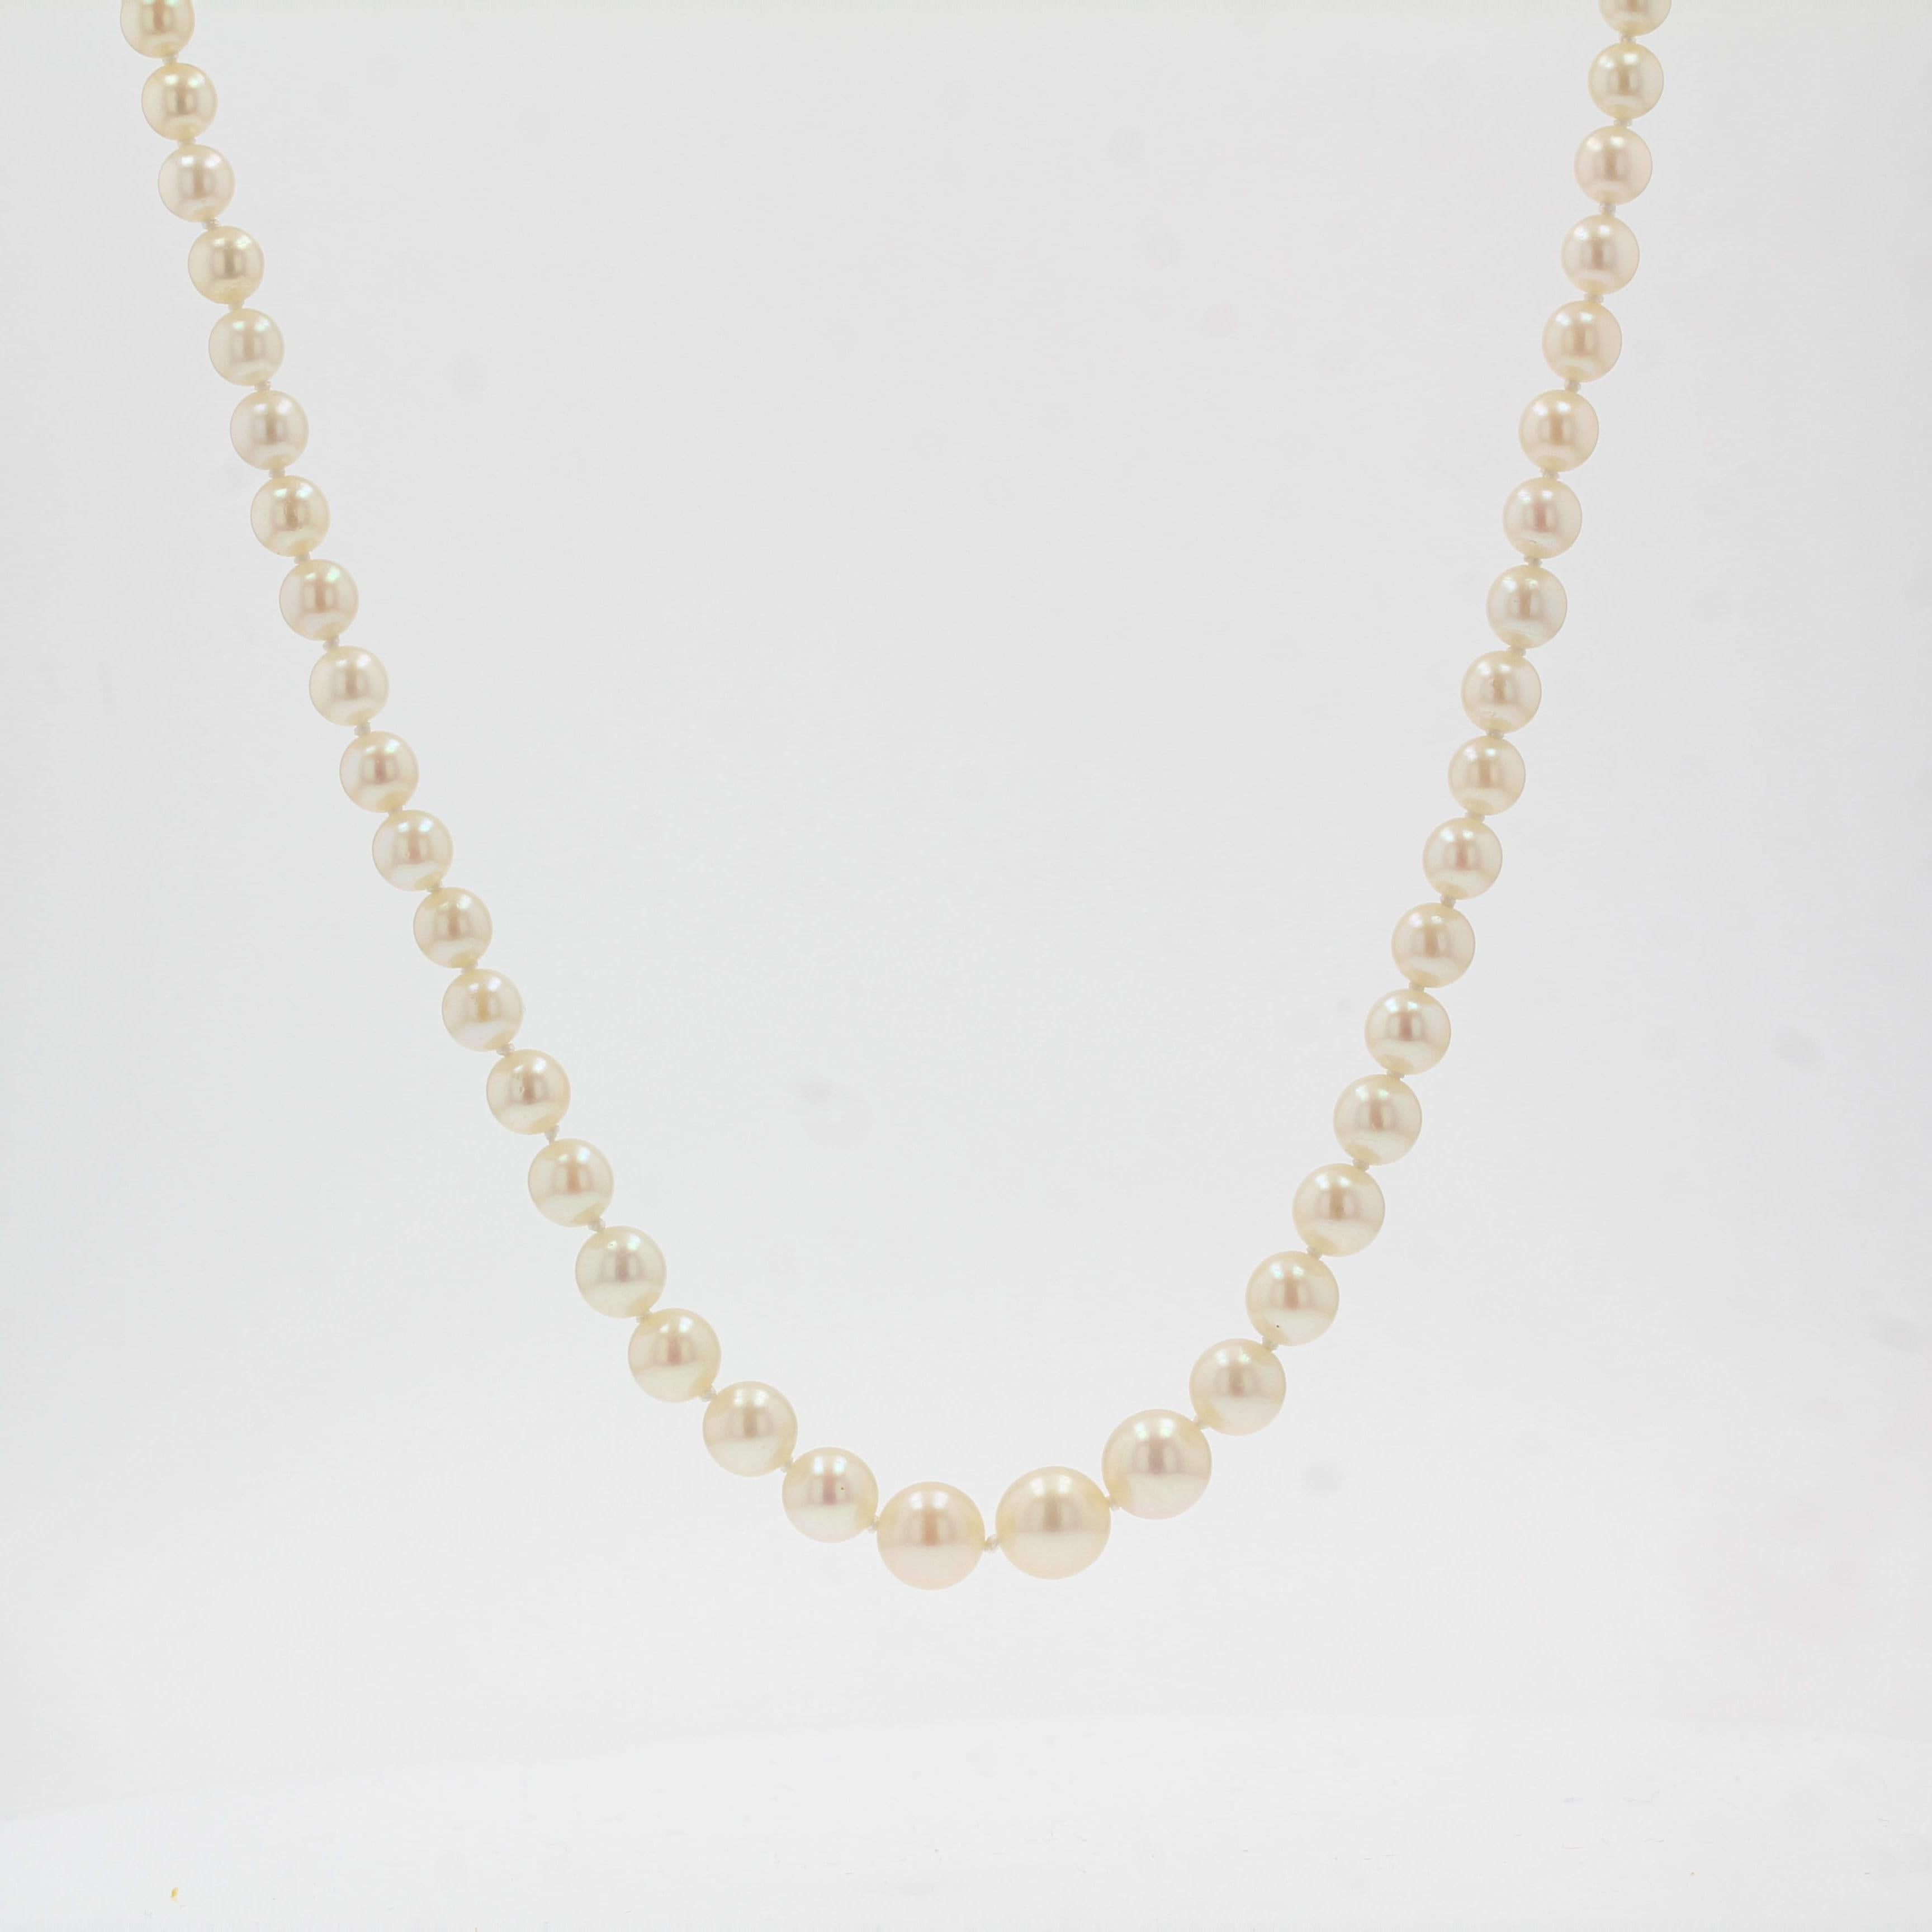 Ce collier de perles est composé d'un rang de perles de culture japonaises qui sont maintenues ensemble par un fermoir en or jaune 18K. 
Diamètre des perles : 4/4,5 à 8 / 8,5 mm.
Longueur totale : 54,5 cm.
Poids total : environ 22,1 g.
Le collier a